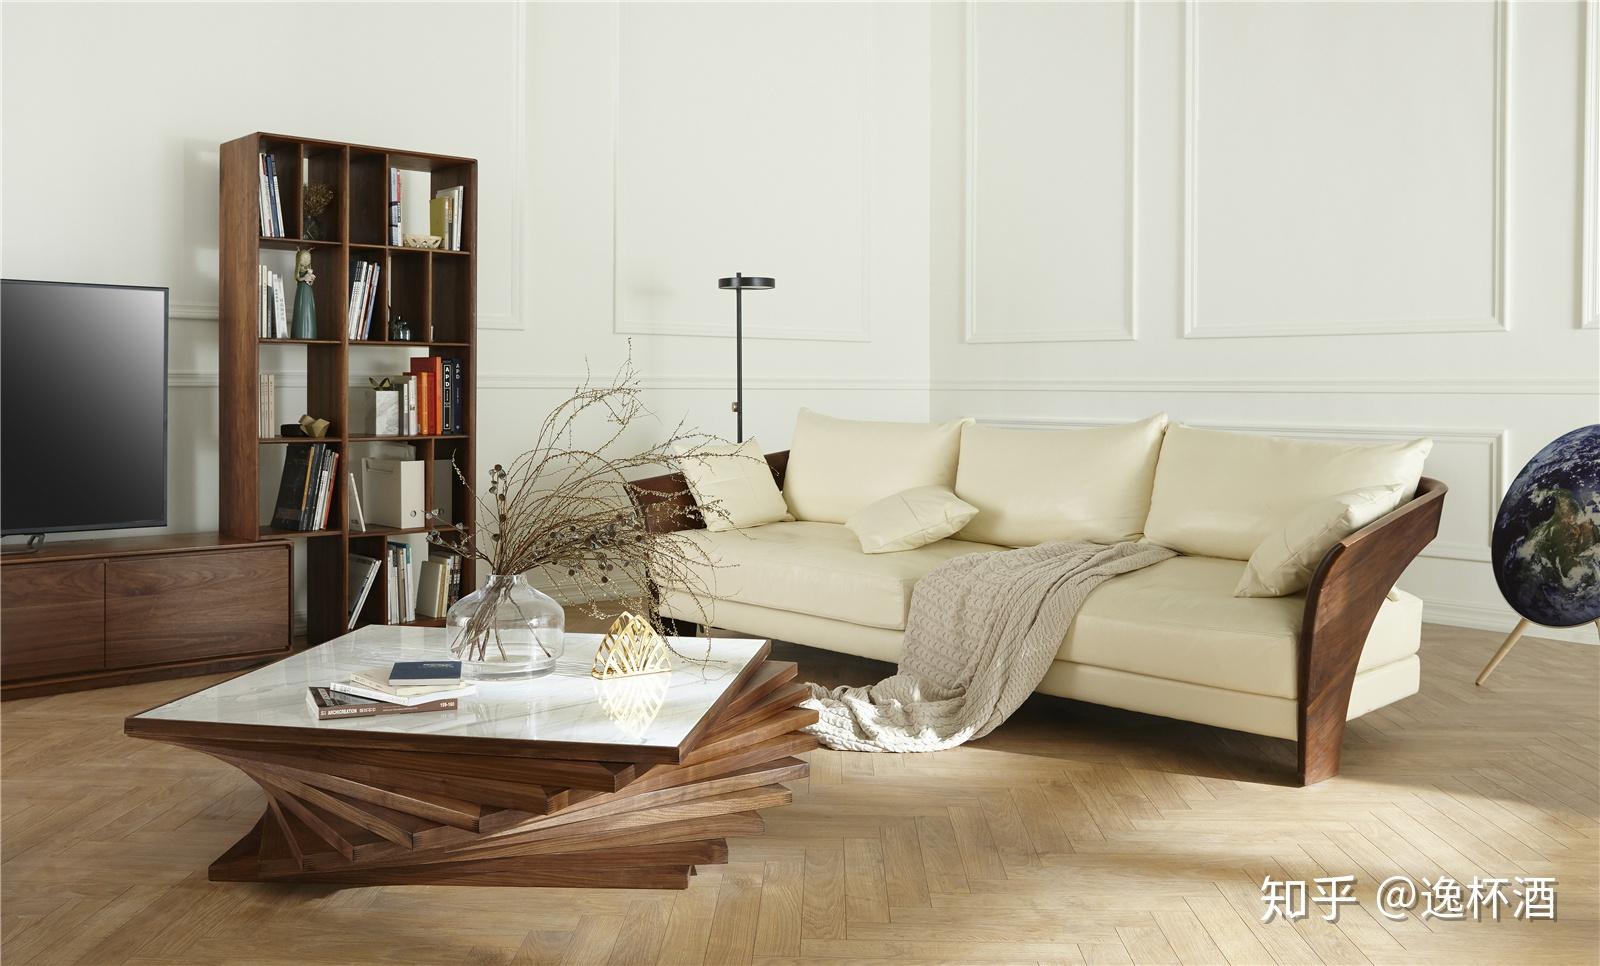 新中式沙发演绎时尚中国风 典雅端庄 - 知乎